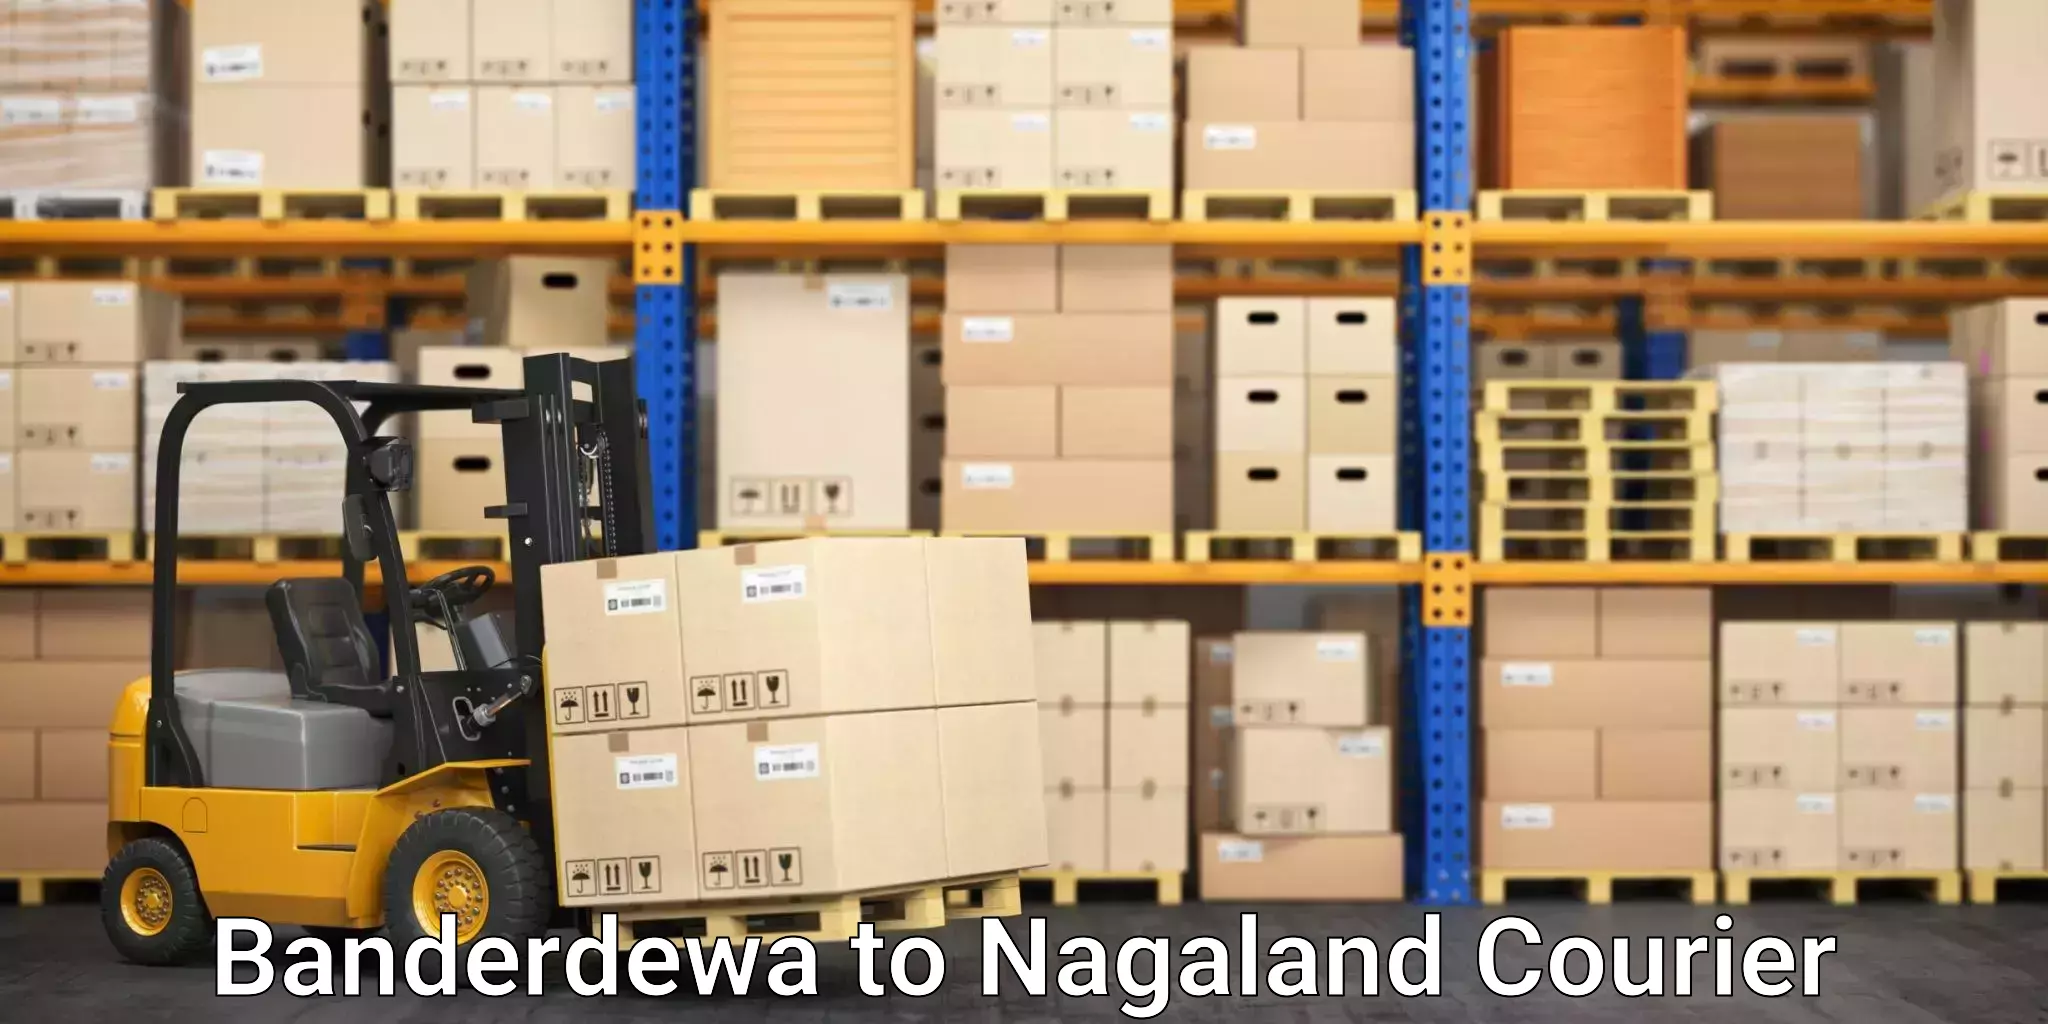 Digital shipping tools Banderdewa to NIT Nagaland